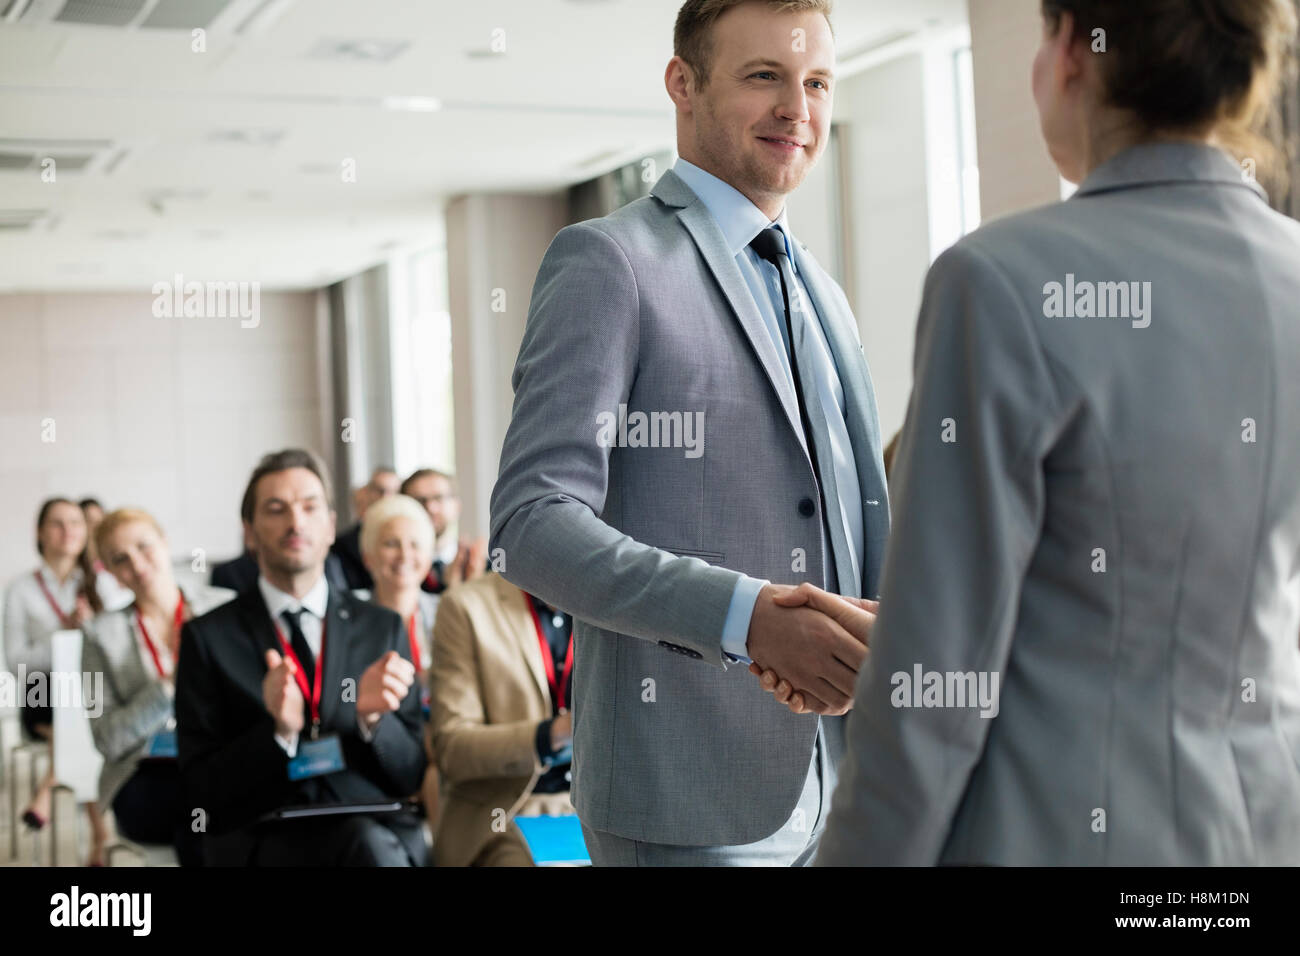 Confident businessman greeting public speaker during seminar Stock Photo